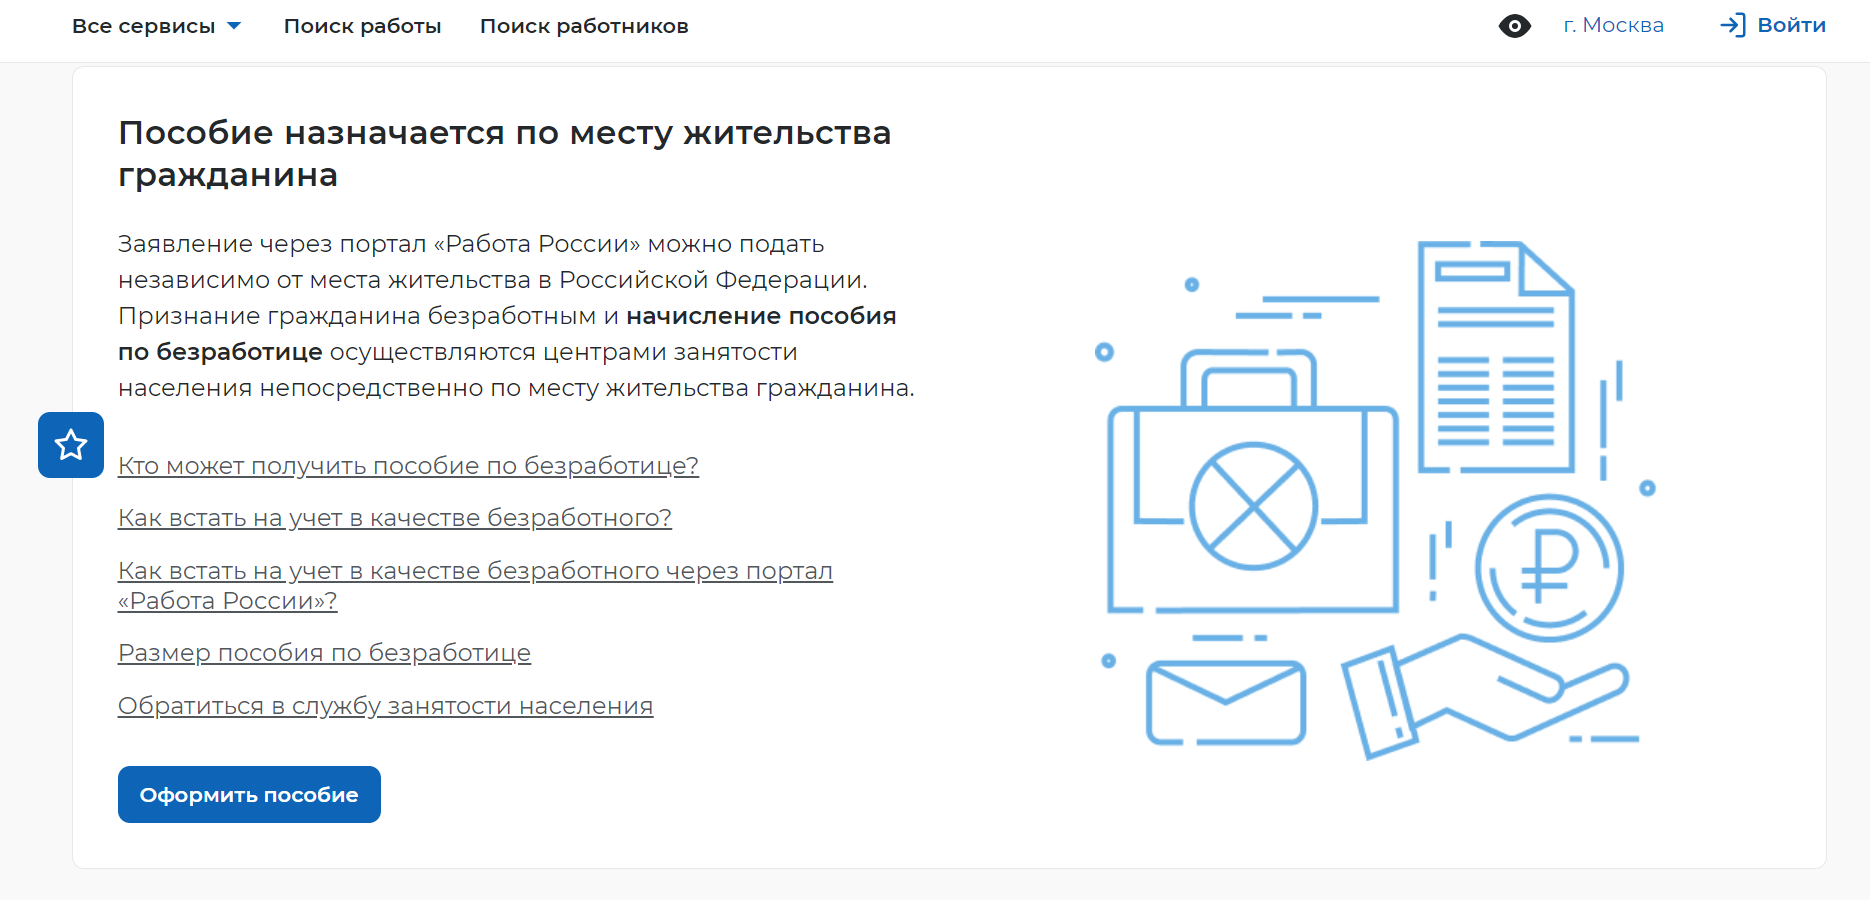 Заявление на пособие по безработице можно подать и через портал «Работа России»